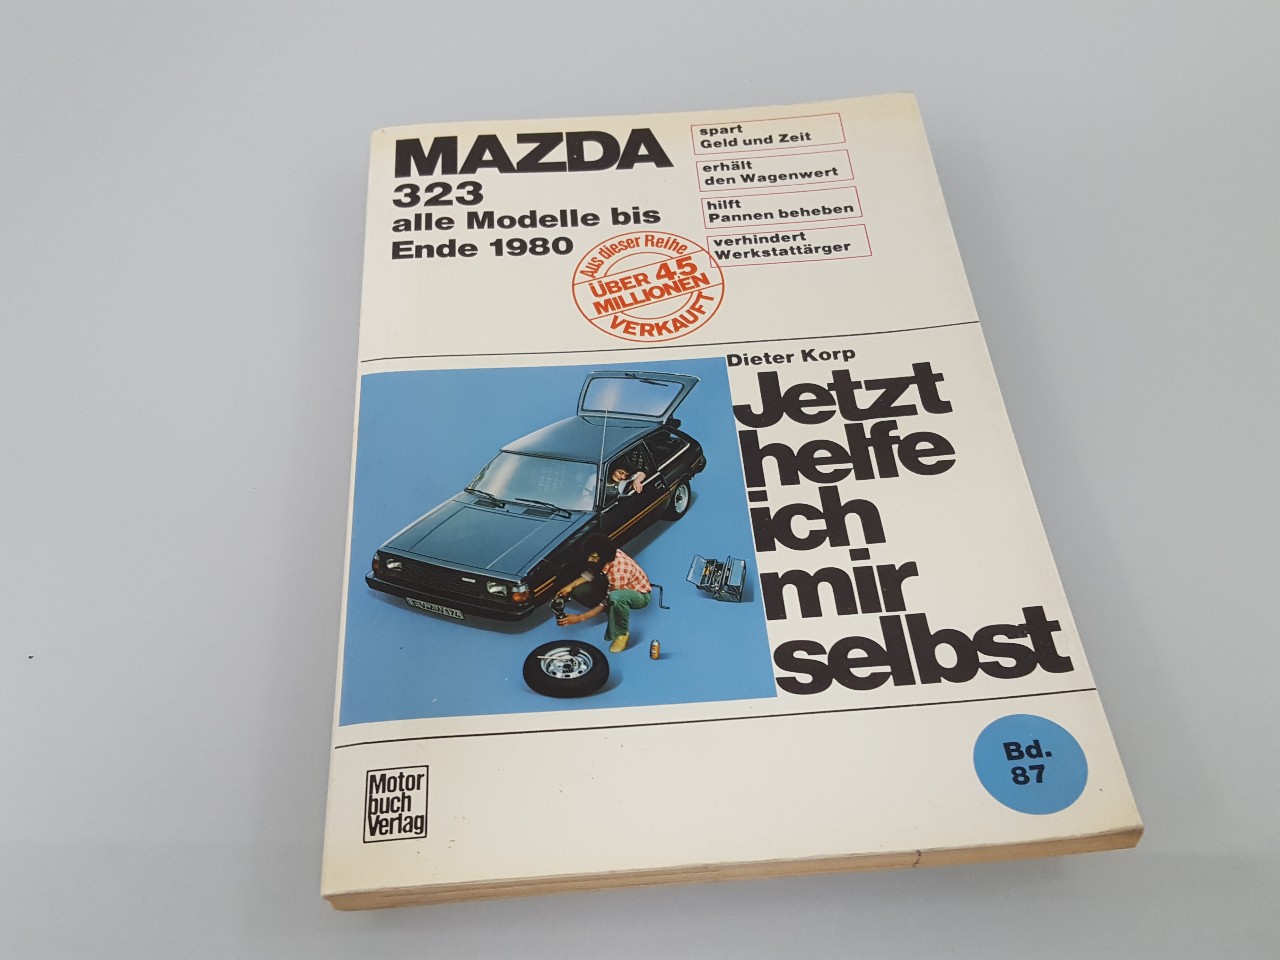 Jetzt helfe ich mir selbst Teil: Bd. 87., Mazda 323 : alle Modelle bis Ende 1980 / Dieter Korp. Unter Mitarb. von Gerhard Axmann Mazda 323 - Korp, Dieter